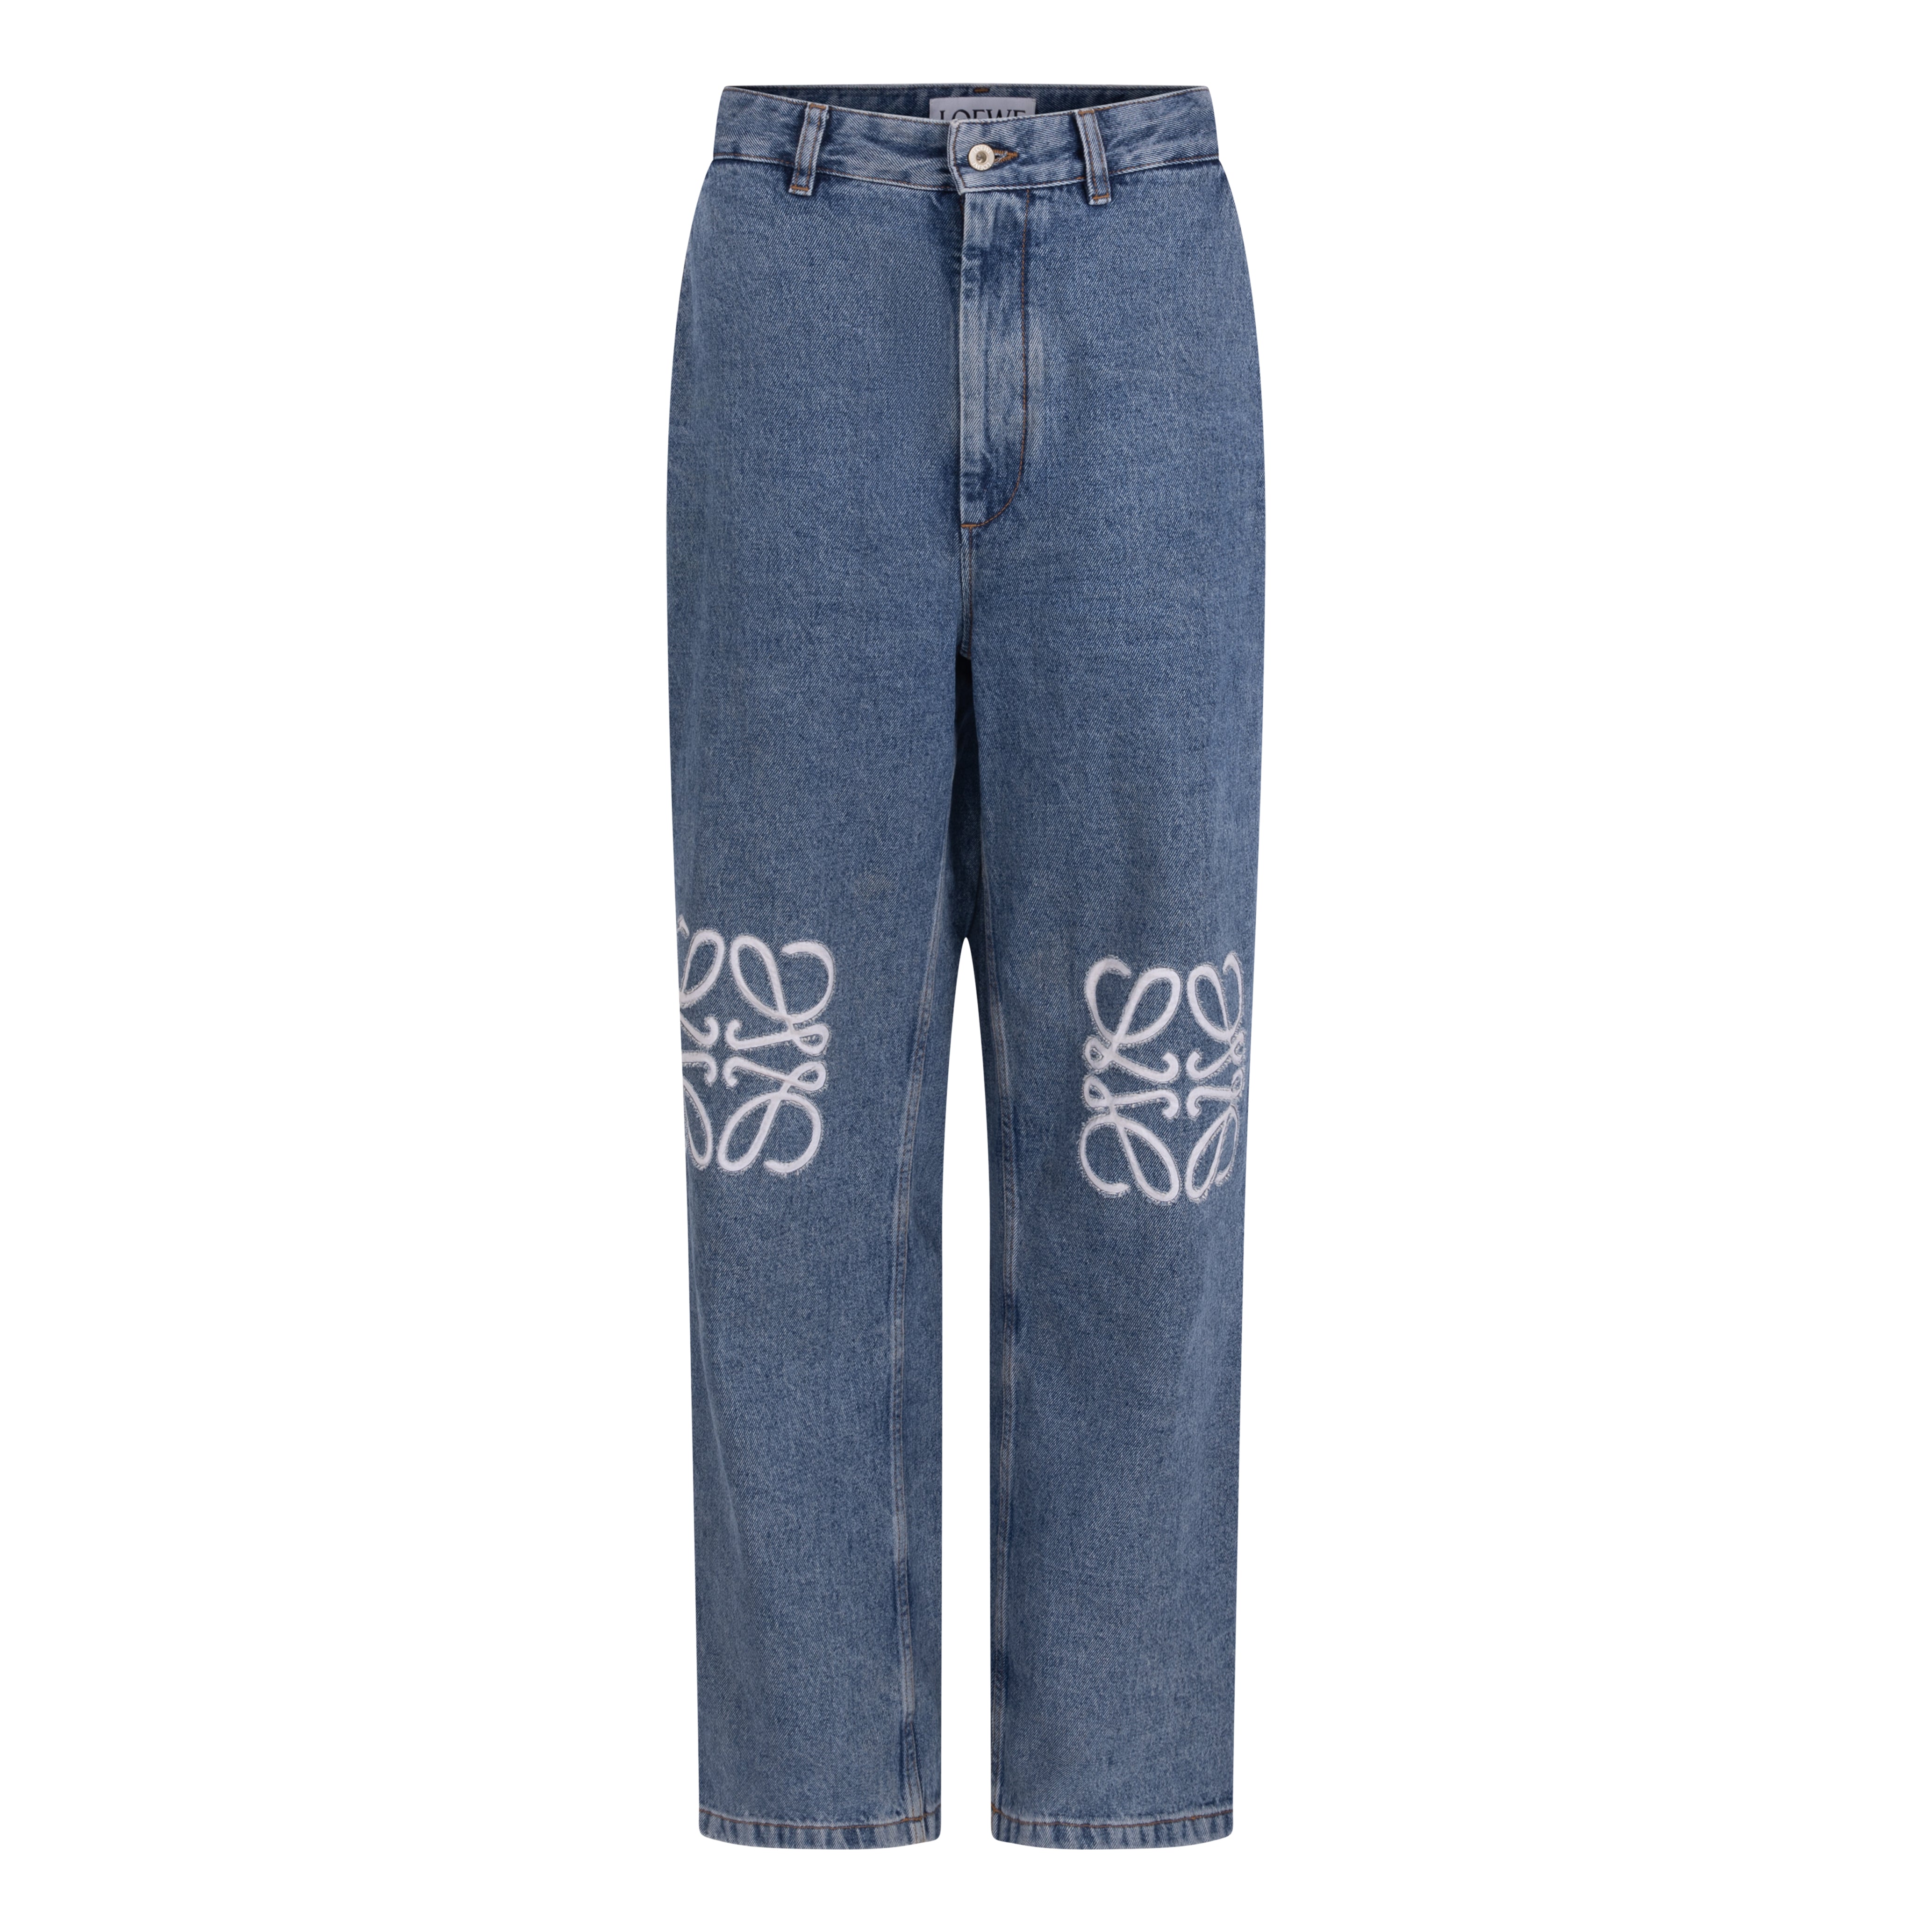 Something Borrowed Loewe Anagram High-Rise Jeans to rent, kledingverhuur.